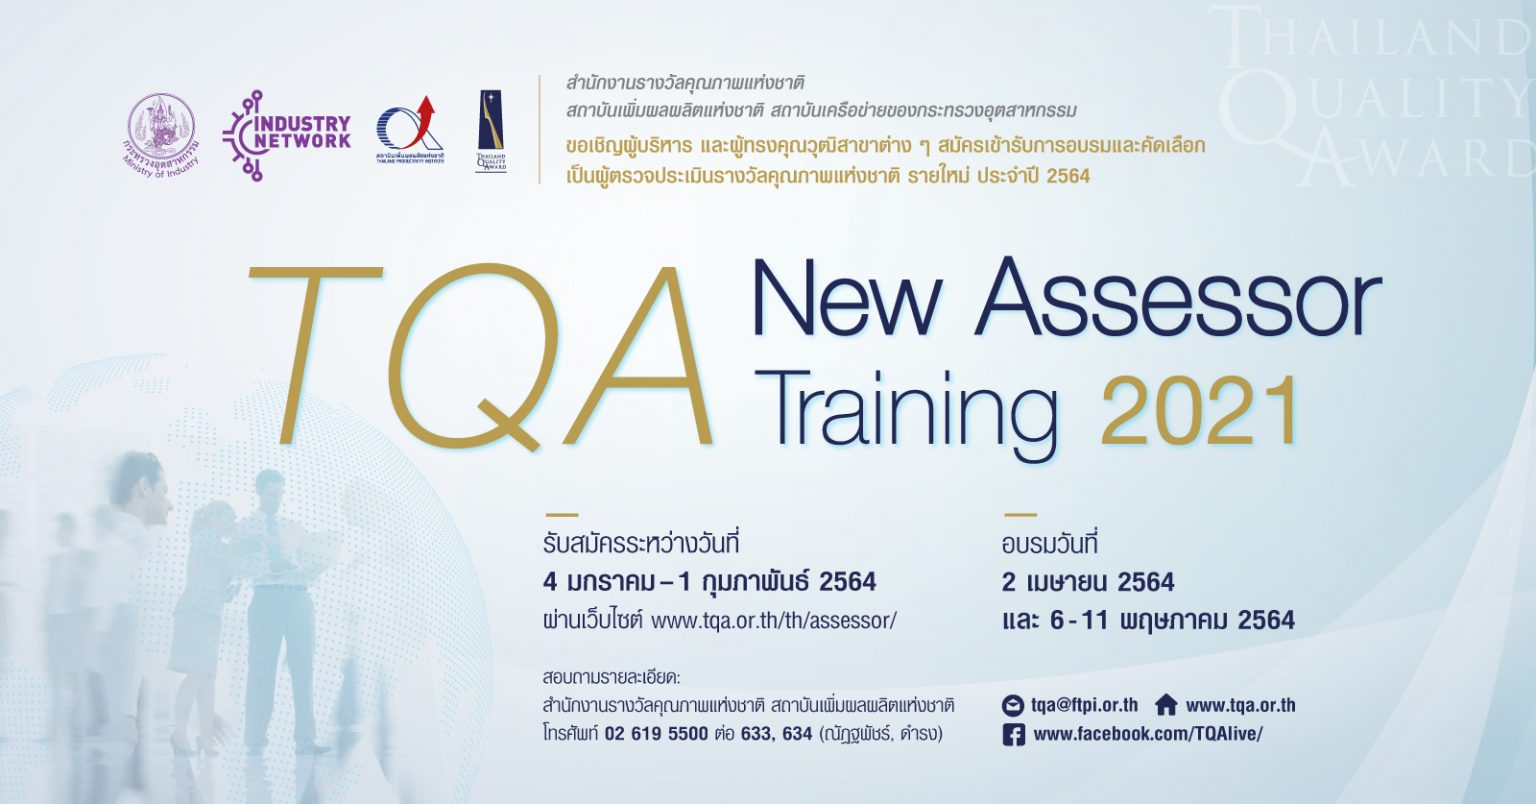 พัฒนาทักษะความสามารถ สู่บทบาทอันทรงเกียรติ ด้วยหลักสูตรการอบรม TQA New Assessor Training 2021